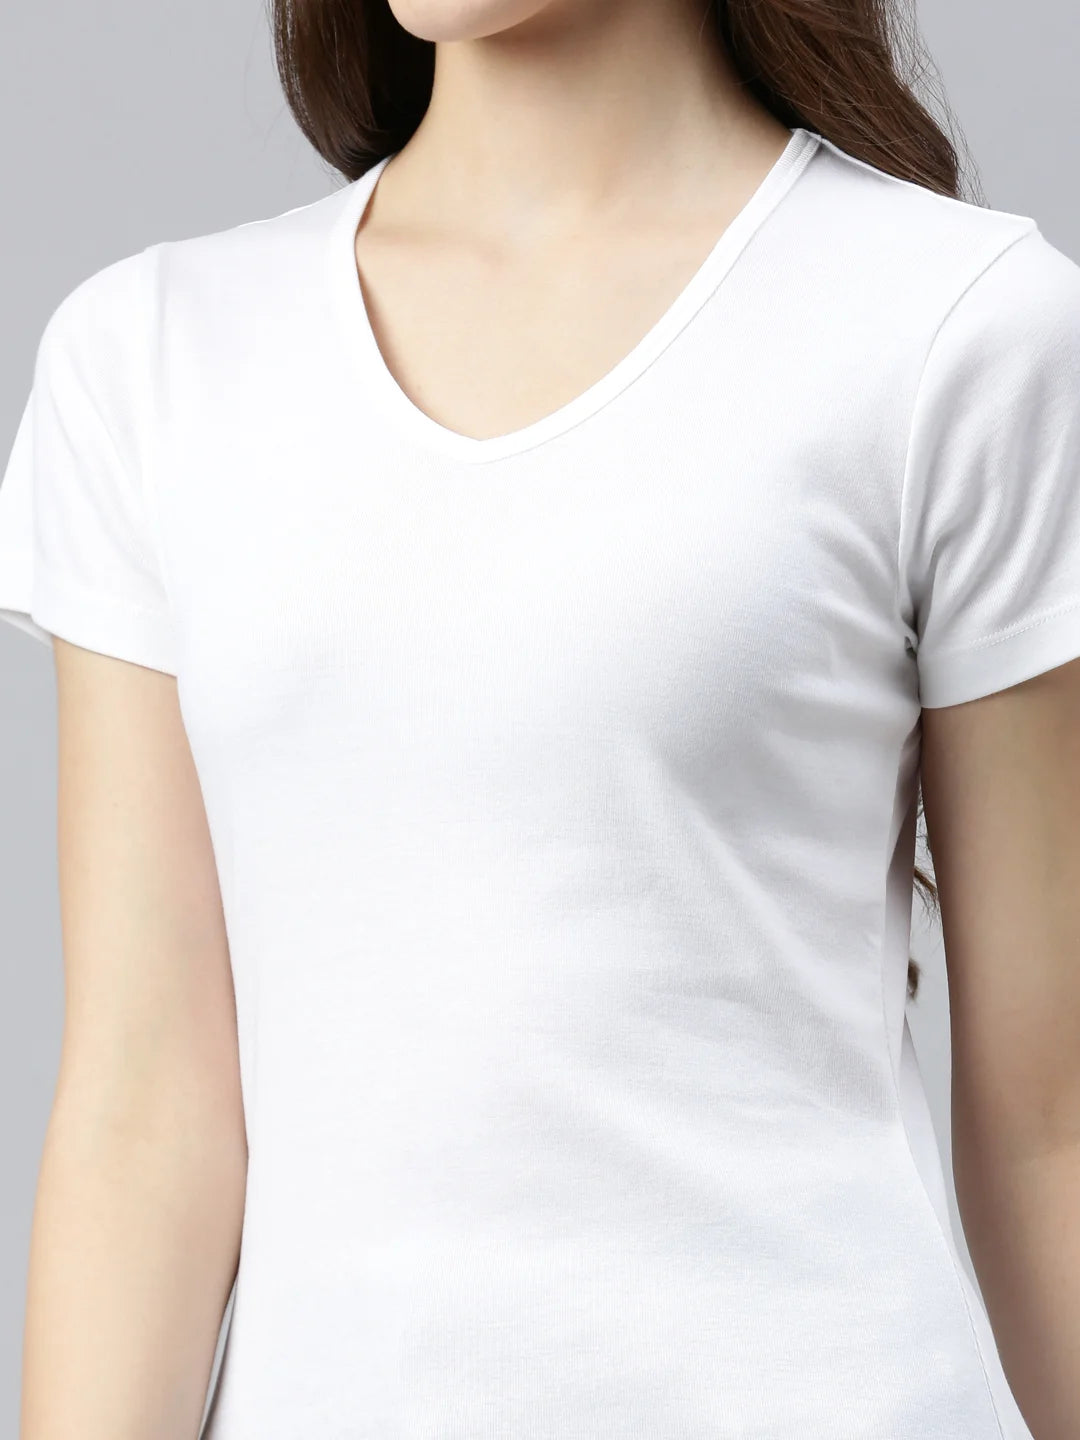 maglietta donna-efia-cotone-collo-v-bianco-zoom